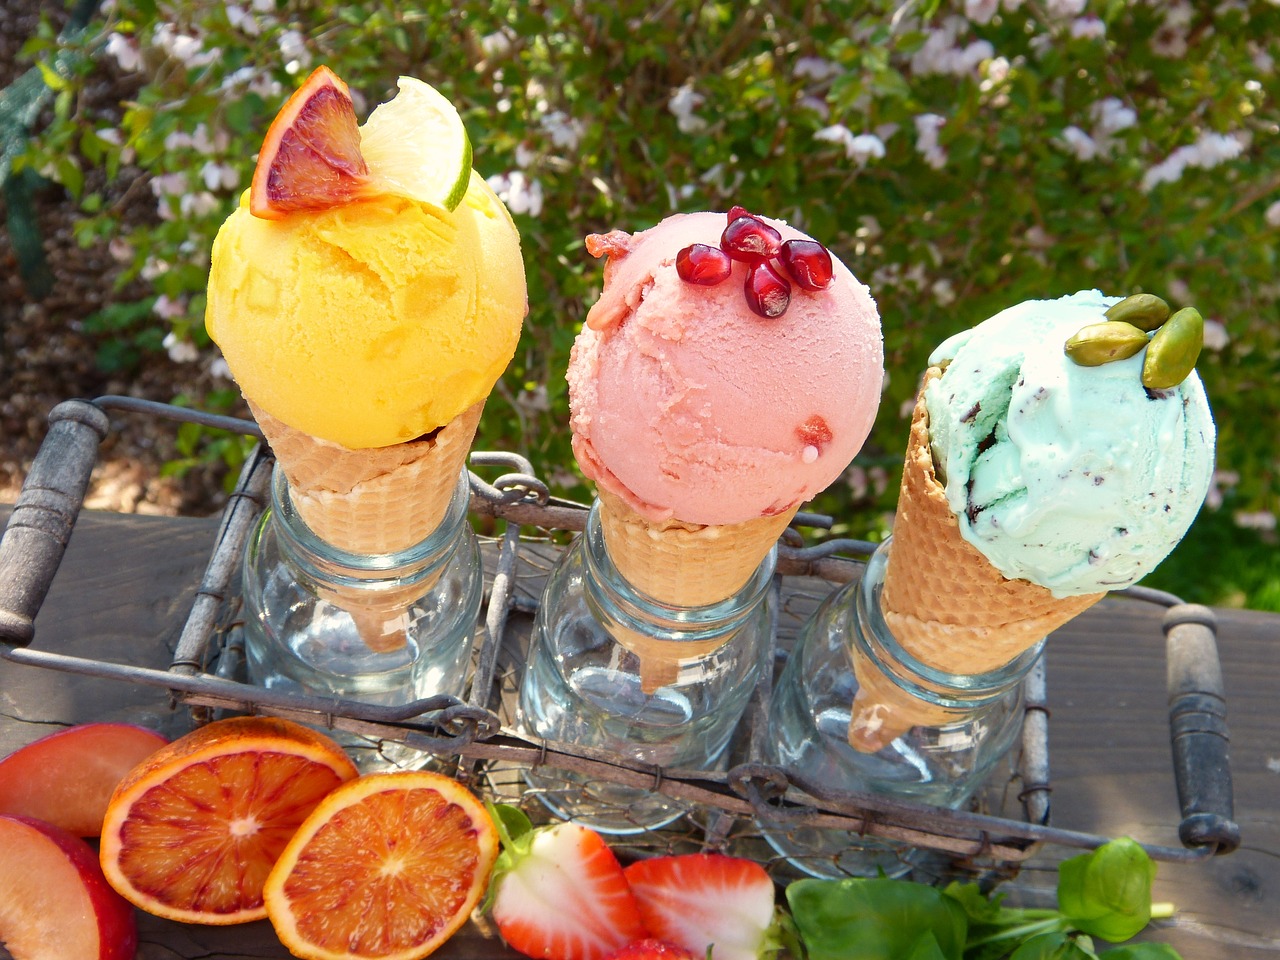 ice cream ice cream flavors fruits free photo